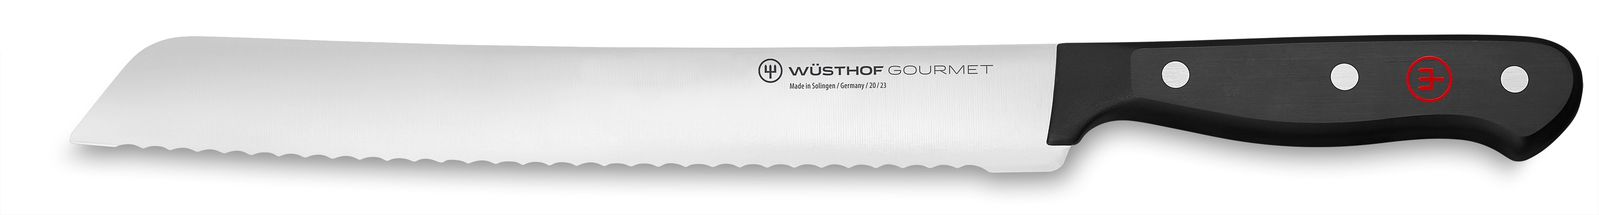 Couteau à pain Wusthof Gourmet 23 cm